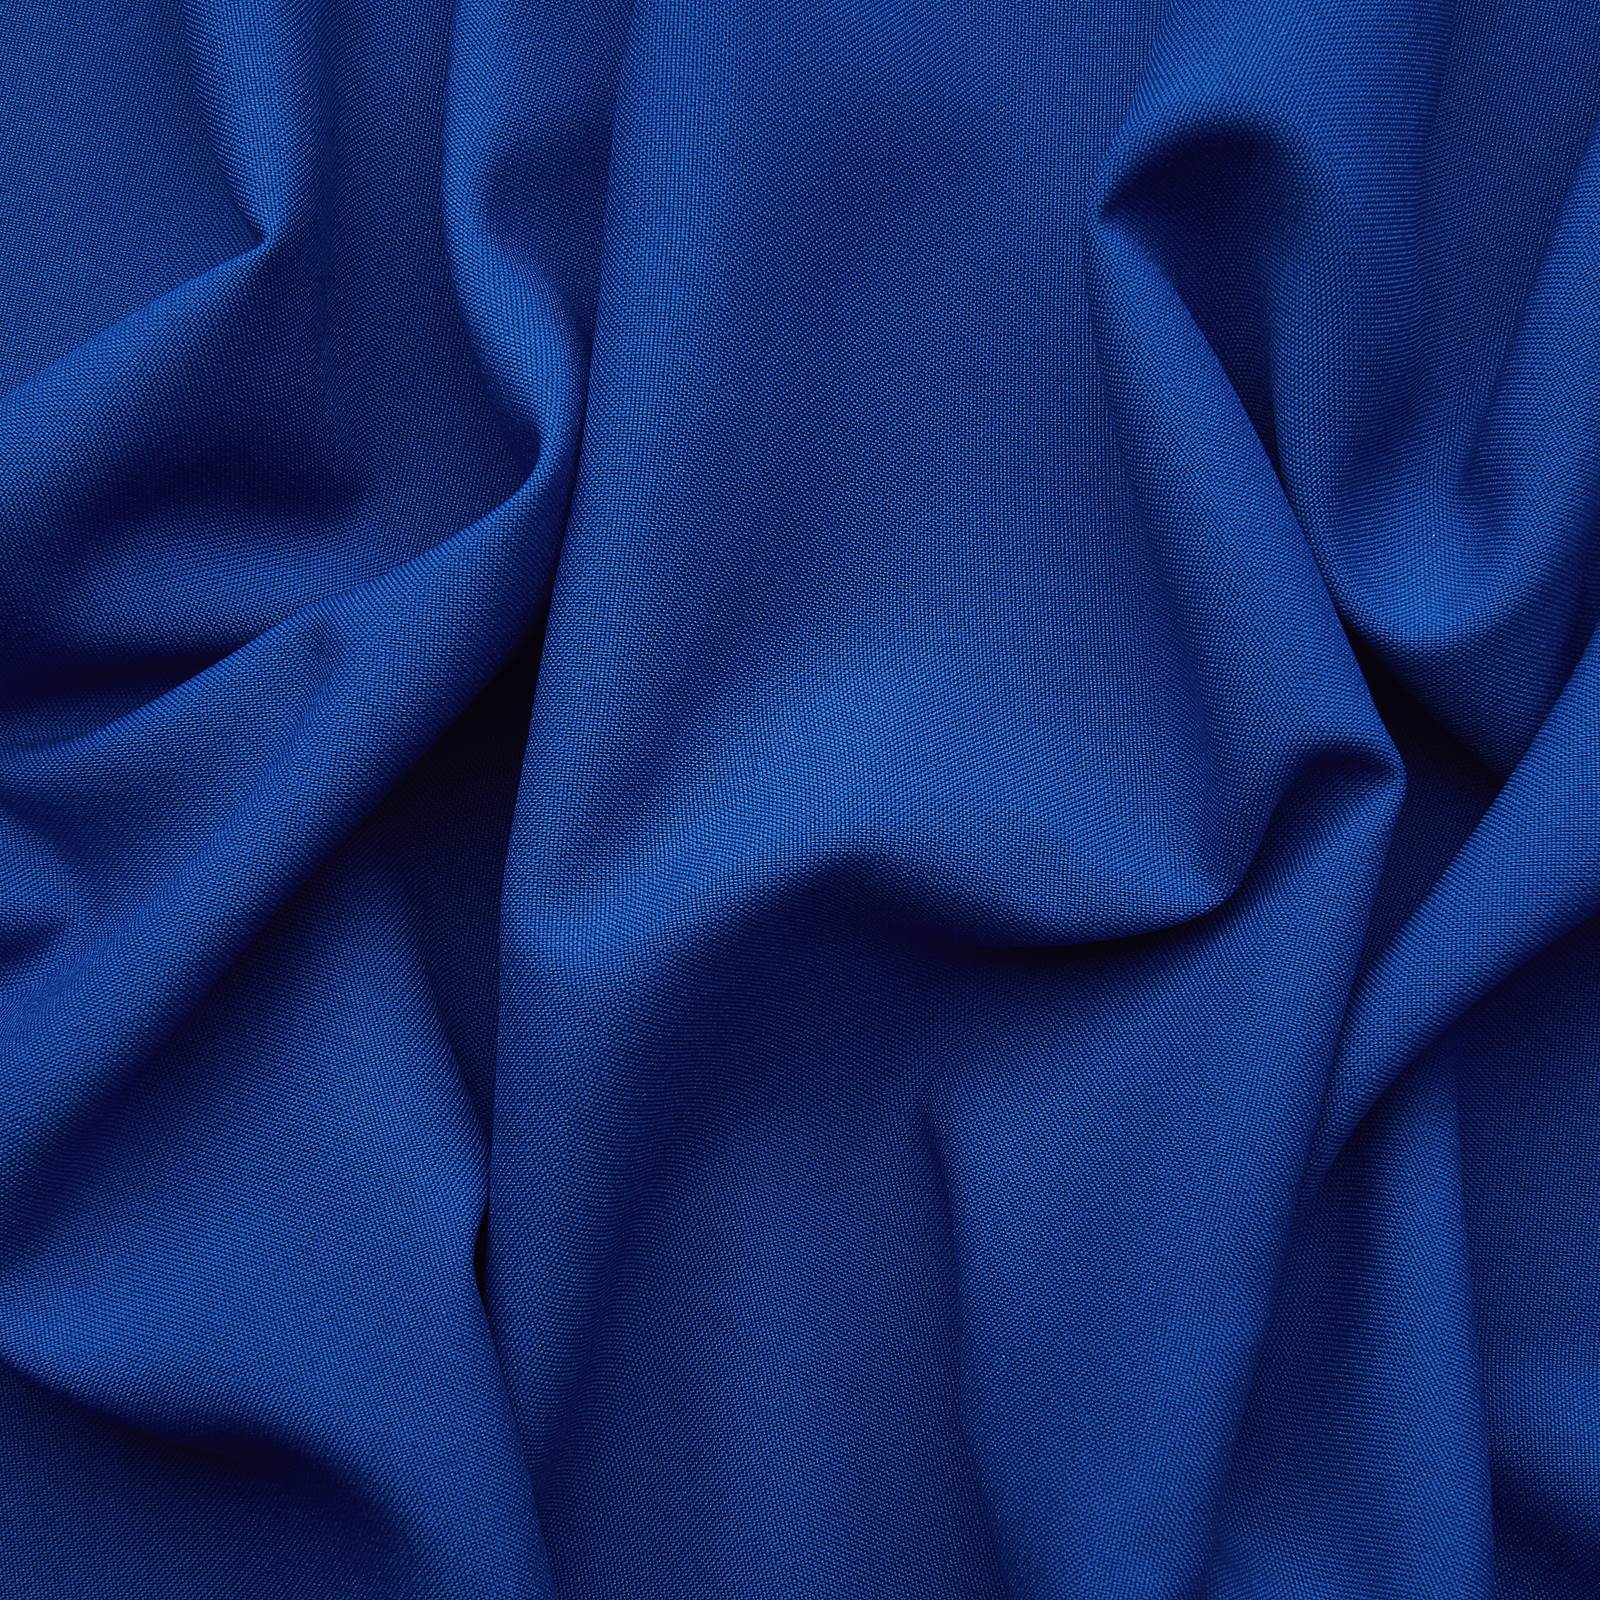 Fénix – Tela multiusos retardante de llama B1 (azul real)